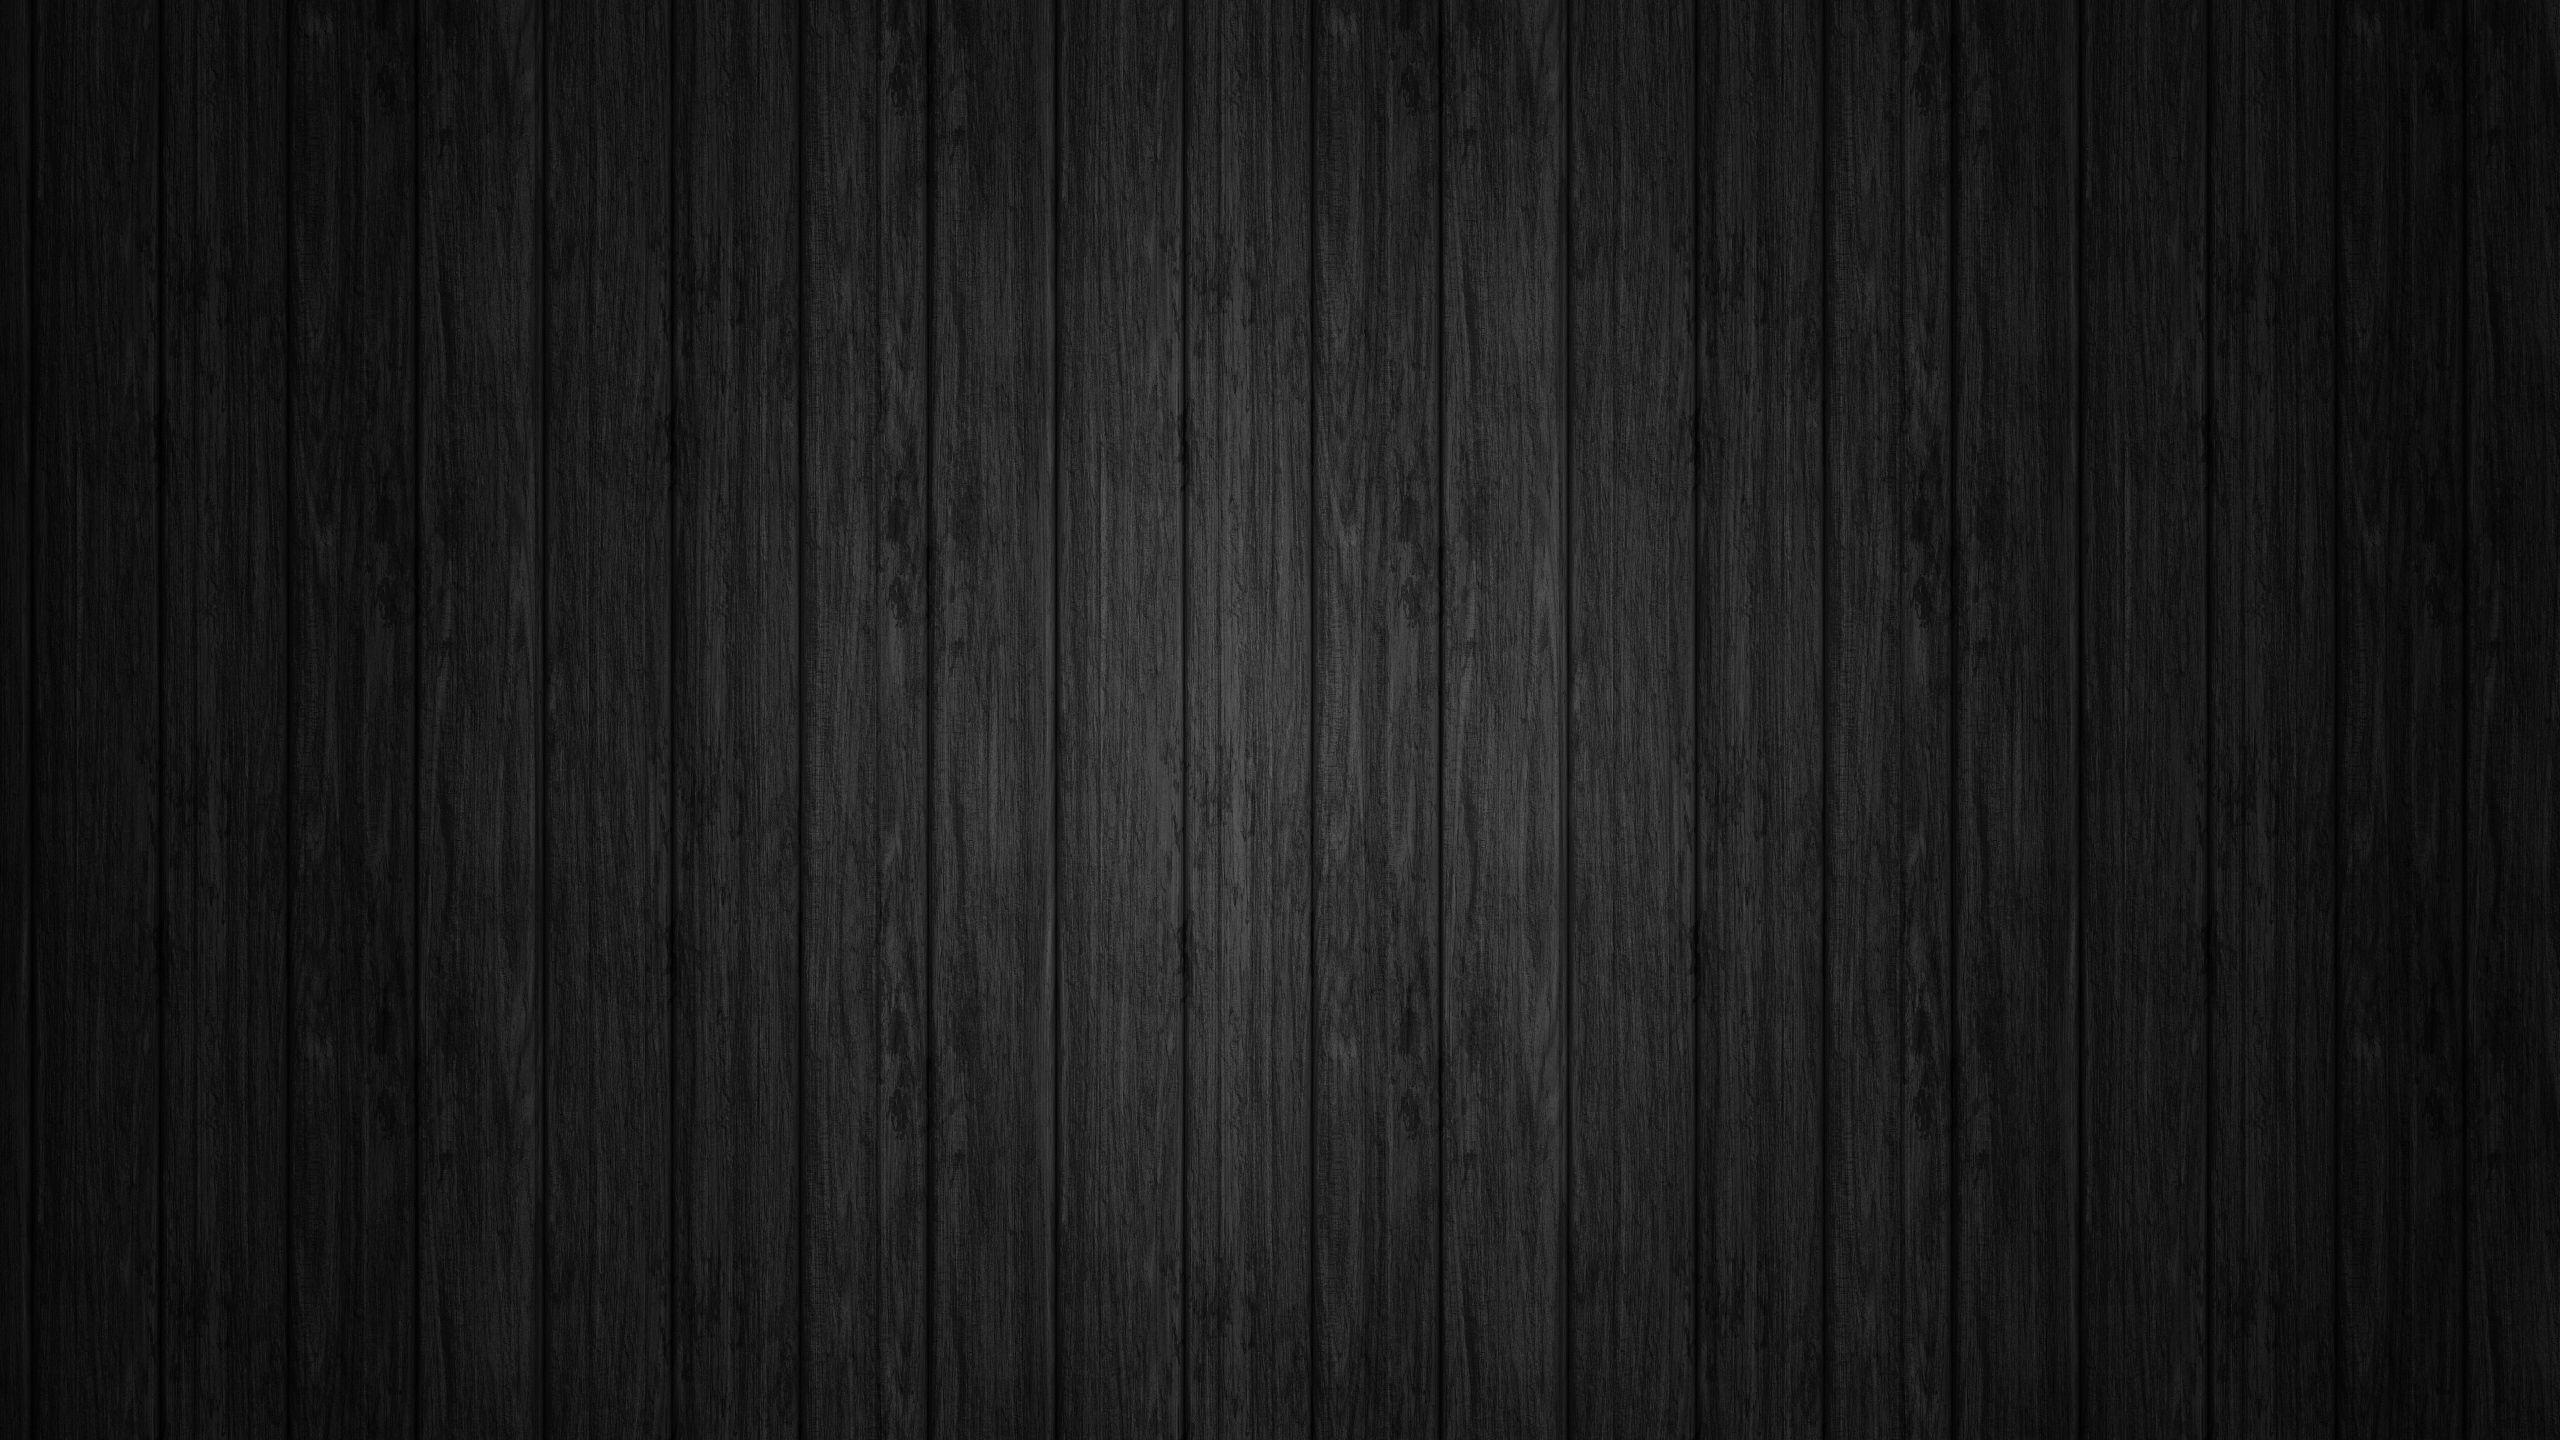 Hình nền đen gỗ sẽ mang đến cho bạn một cái nhìn mới mẻ về mảng gỗ. Hãy xem hình liên quan để khám phá các đường viền và kết cấu chi tiết của từng vân gỗ.